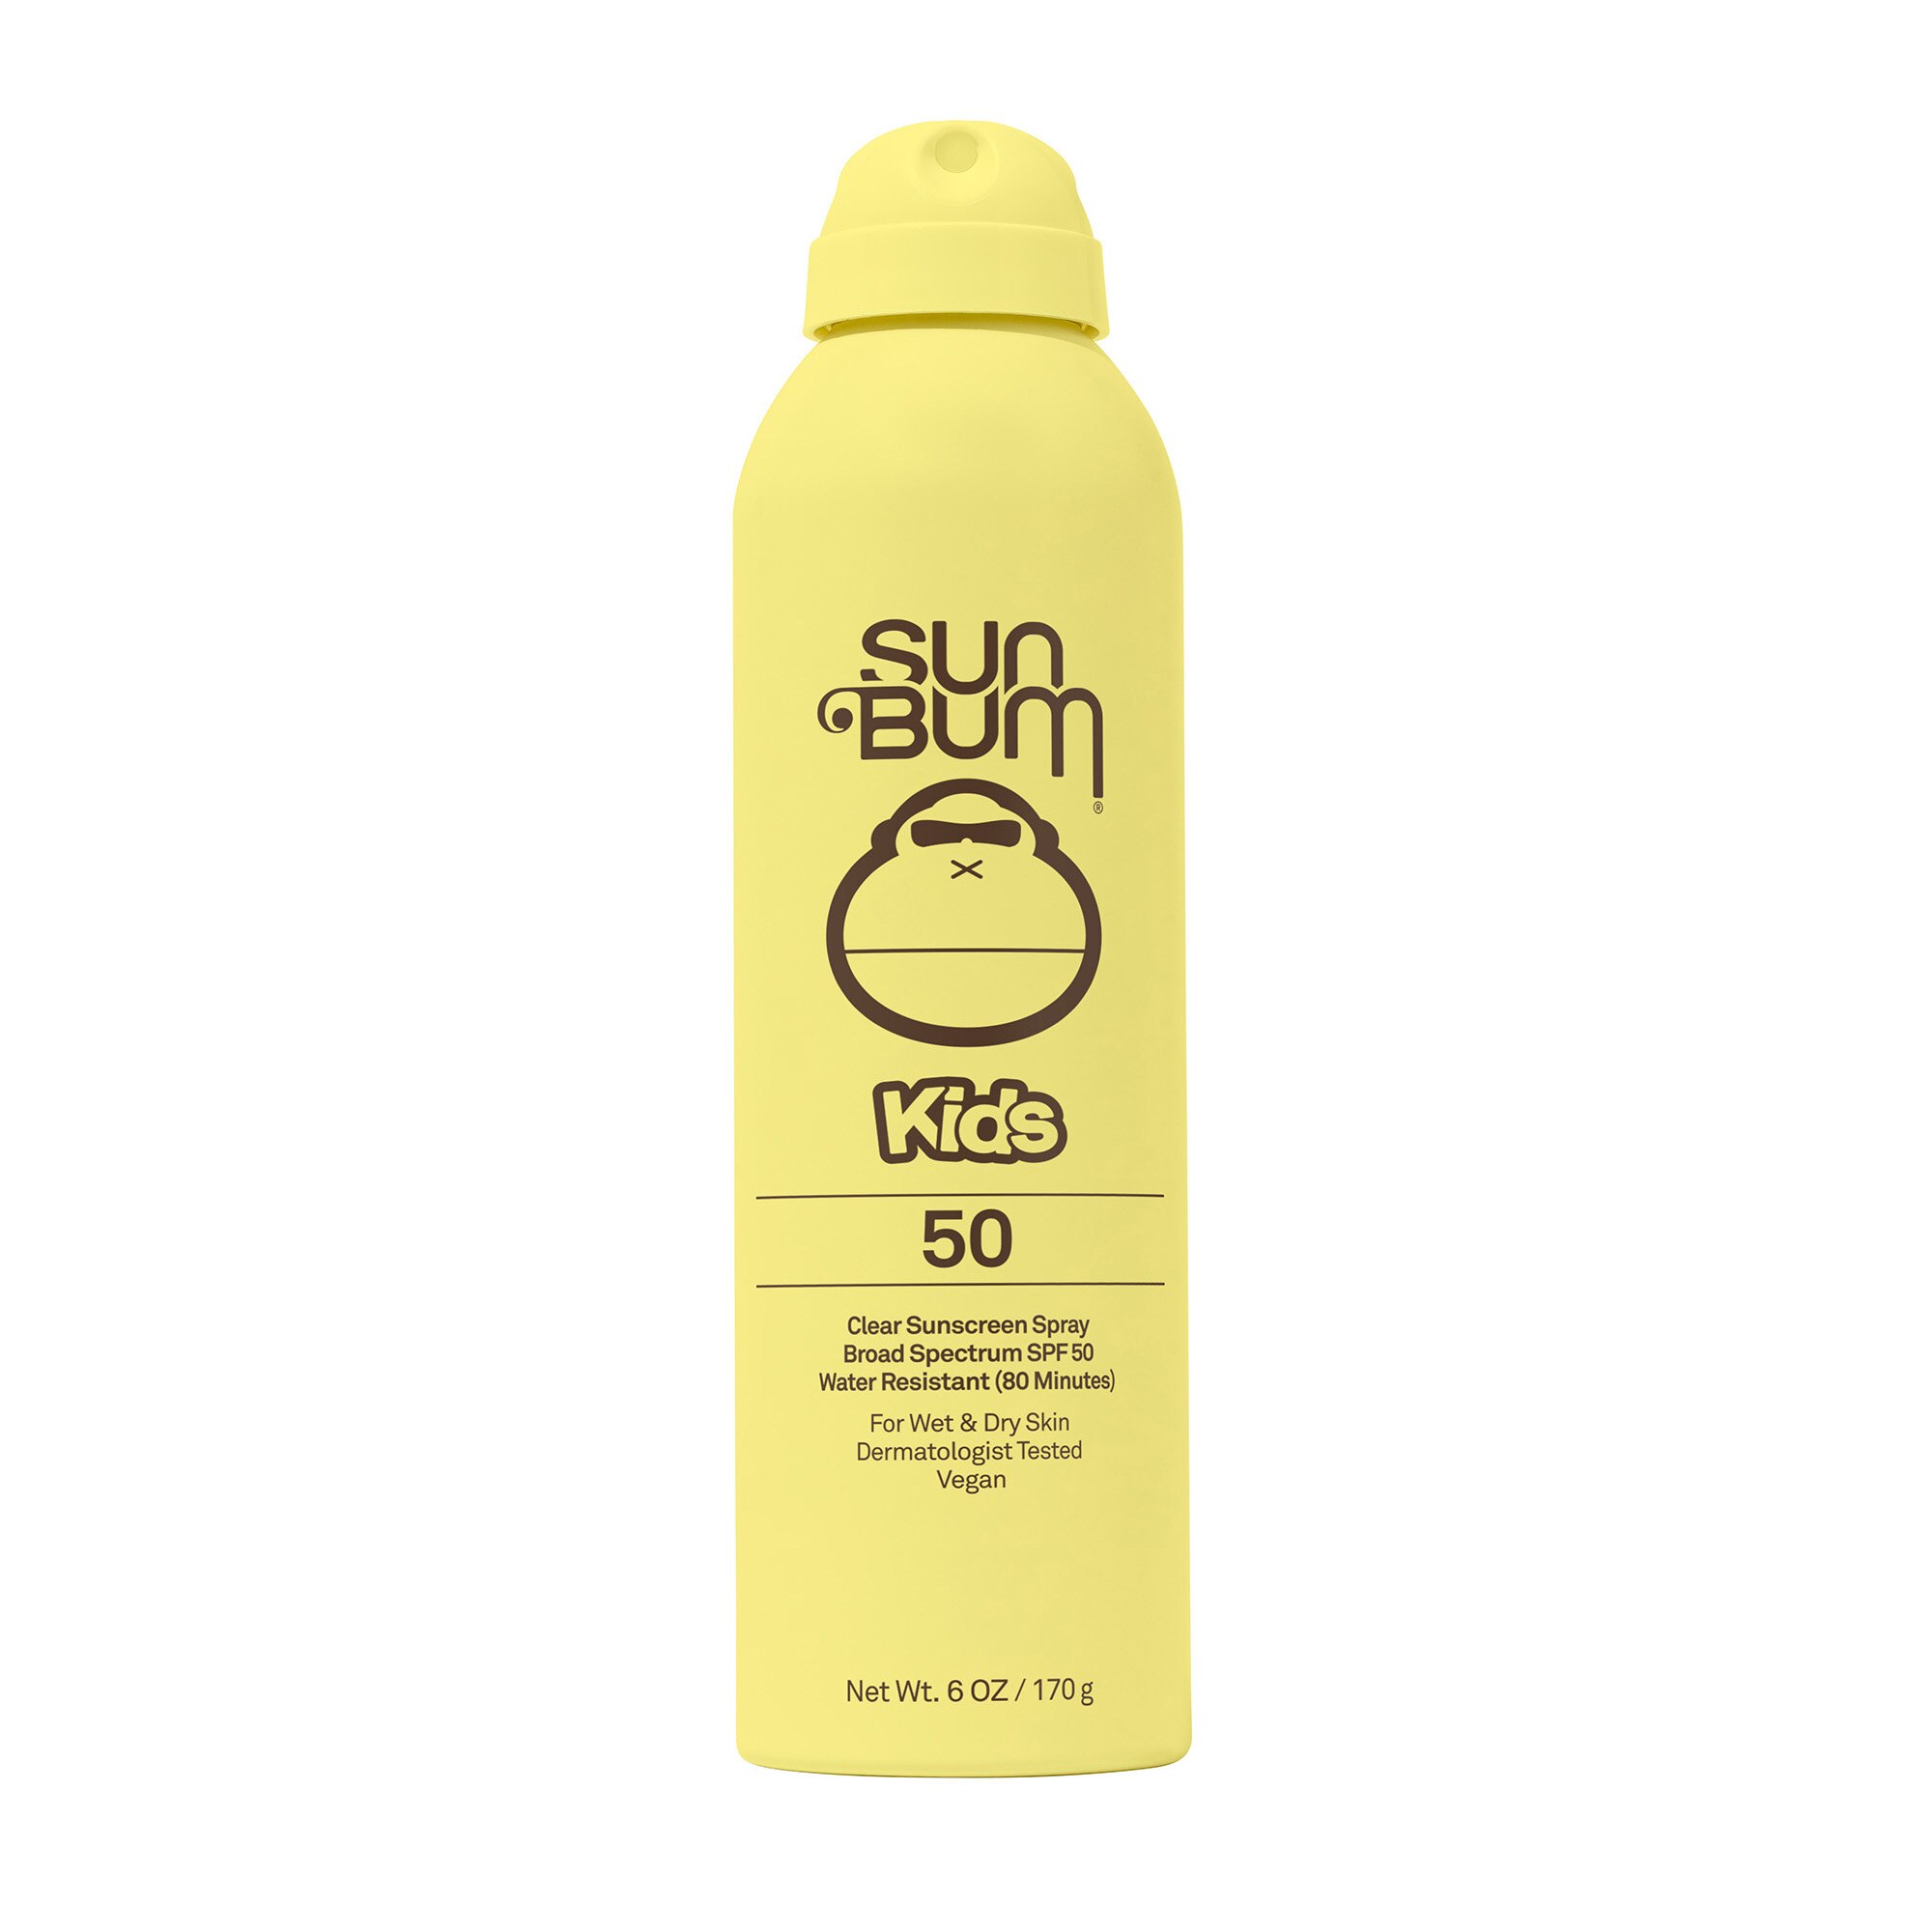 Sun Bum Kids Clear Sunscreen Spray, SPF 50, 6 oz